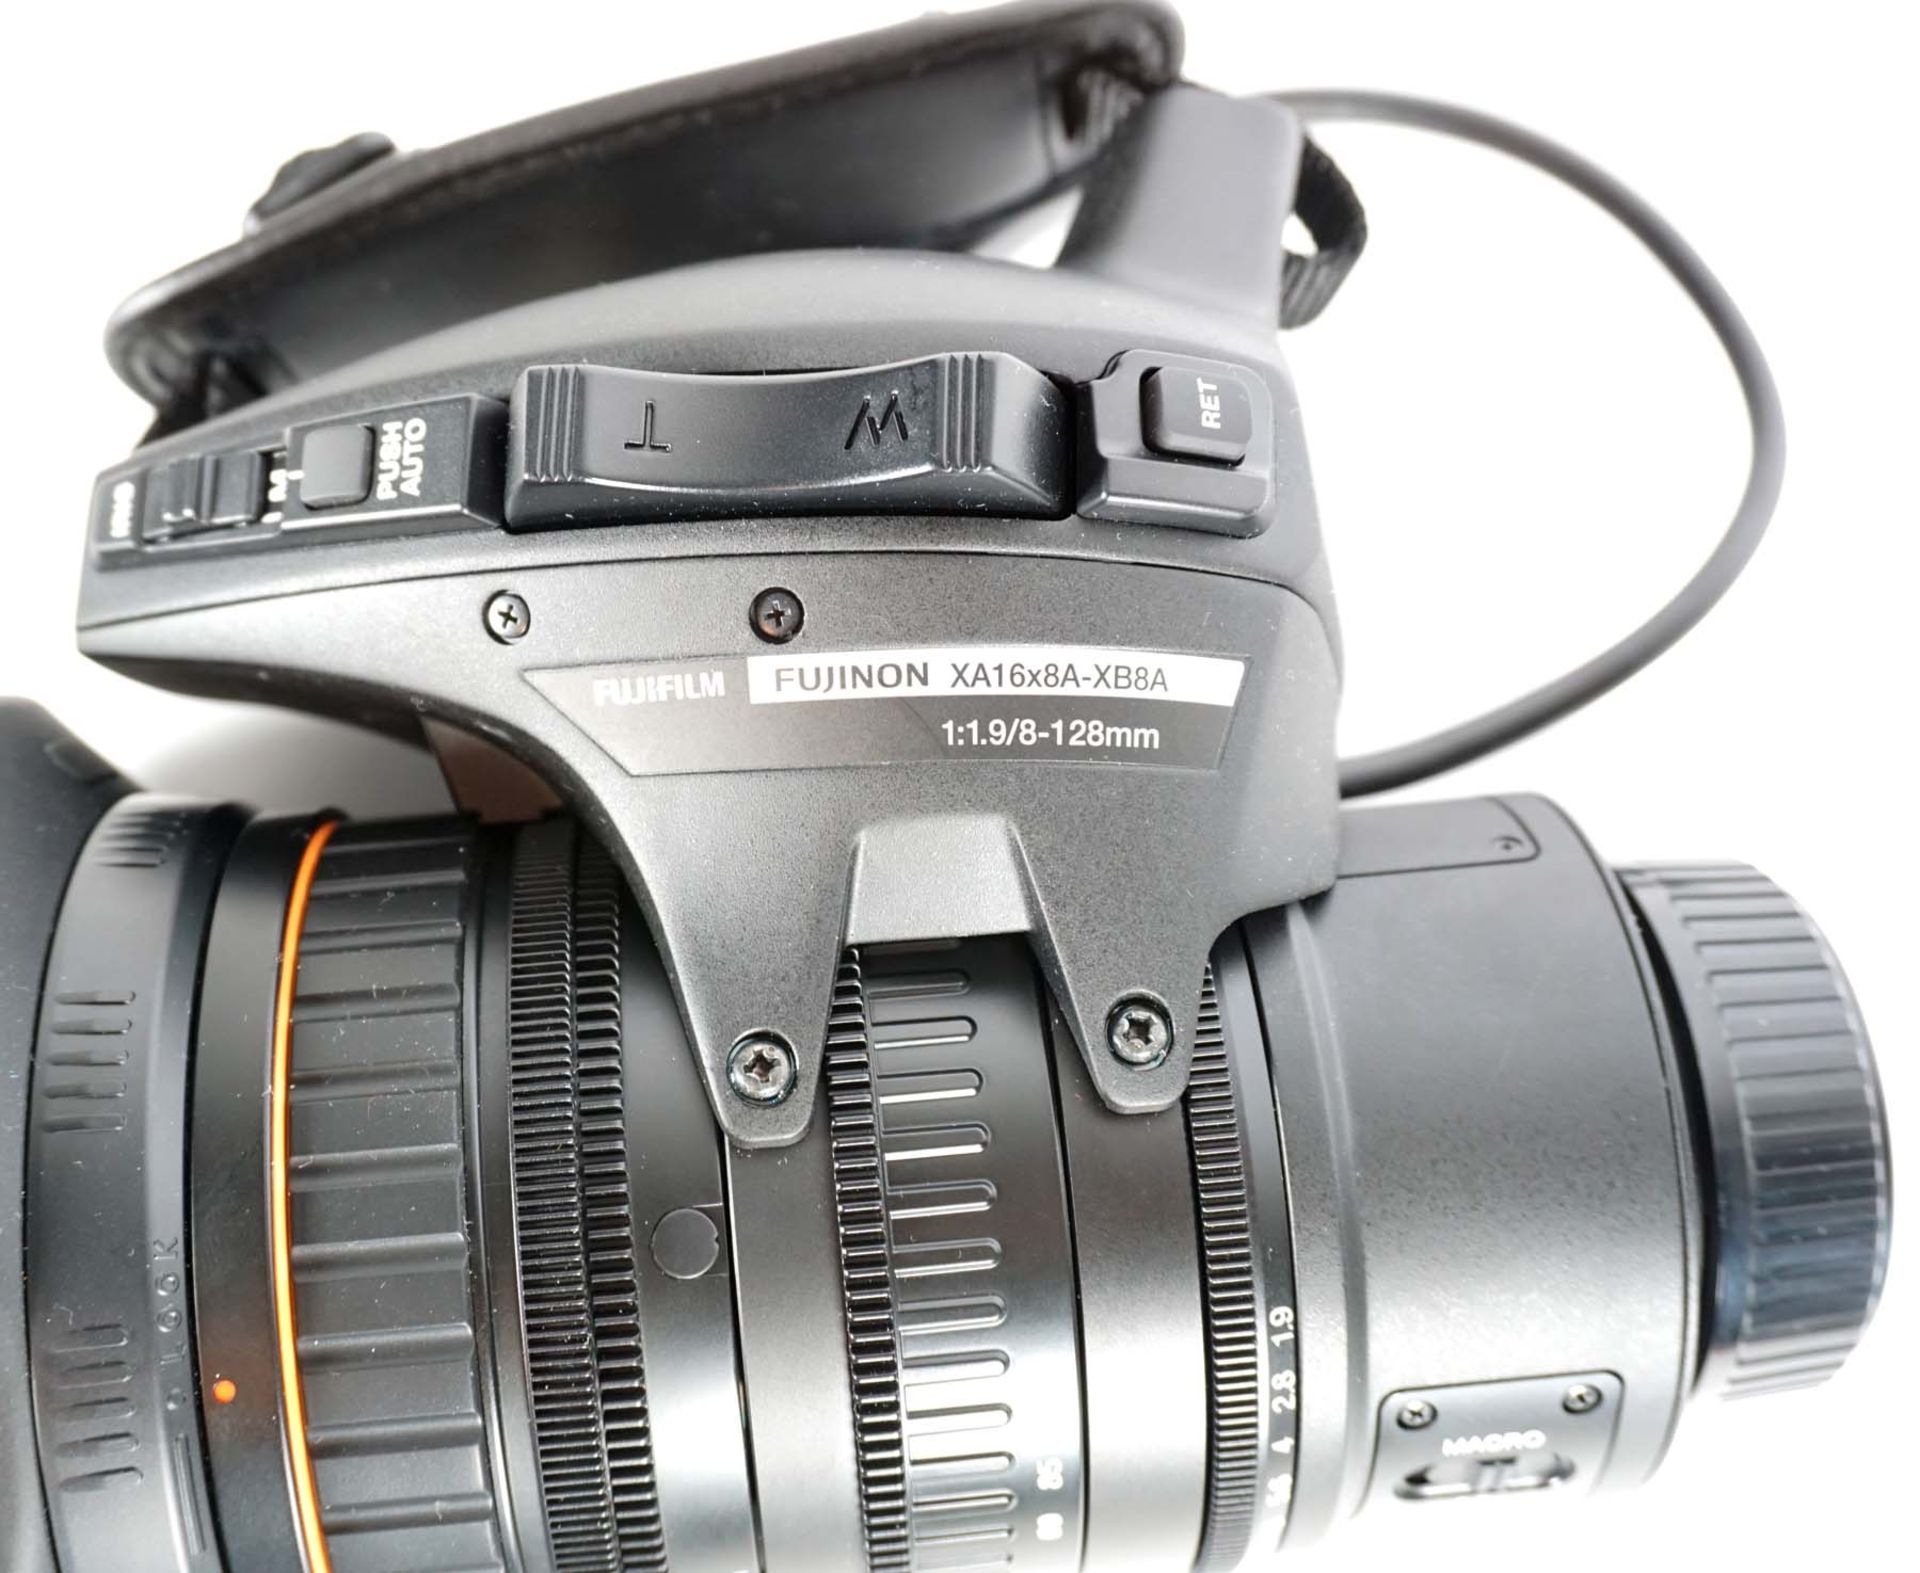 OBJEKTIV, Fujinon HD Lens XA 16x8A-XB8A, - Image 2 of 2